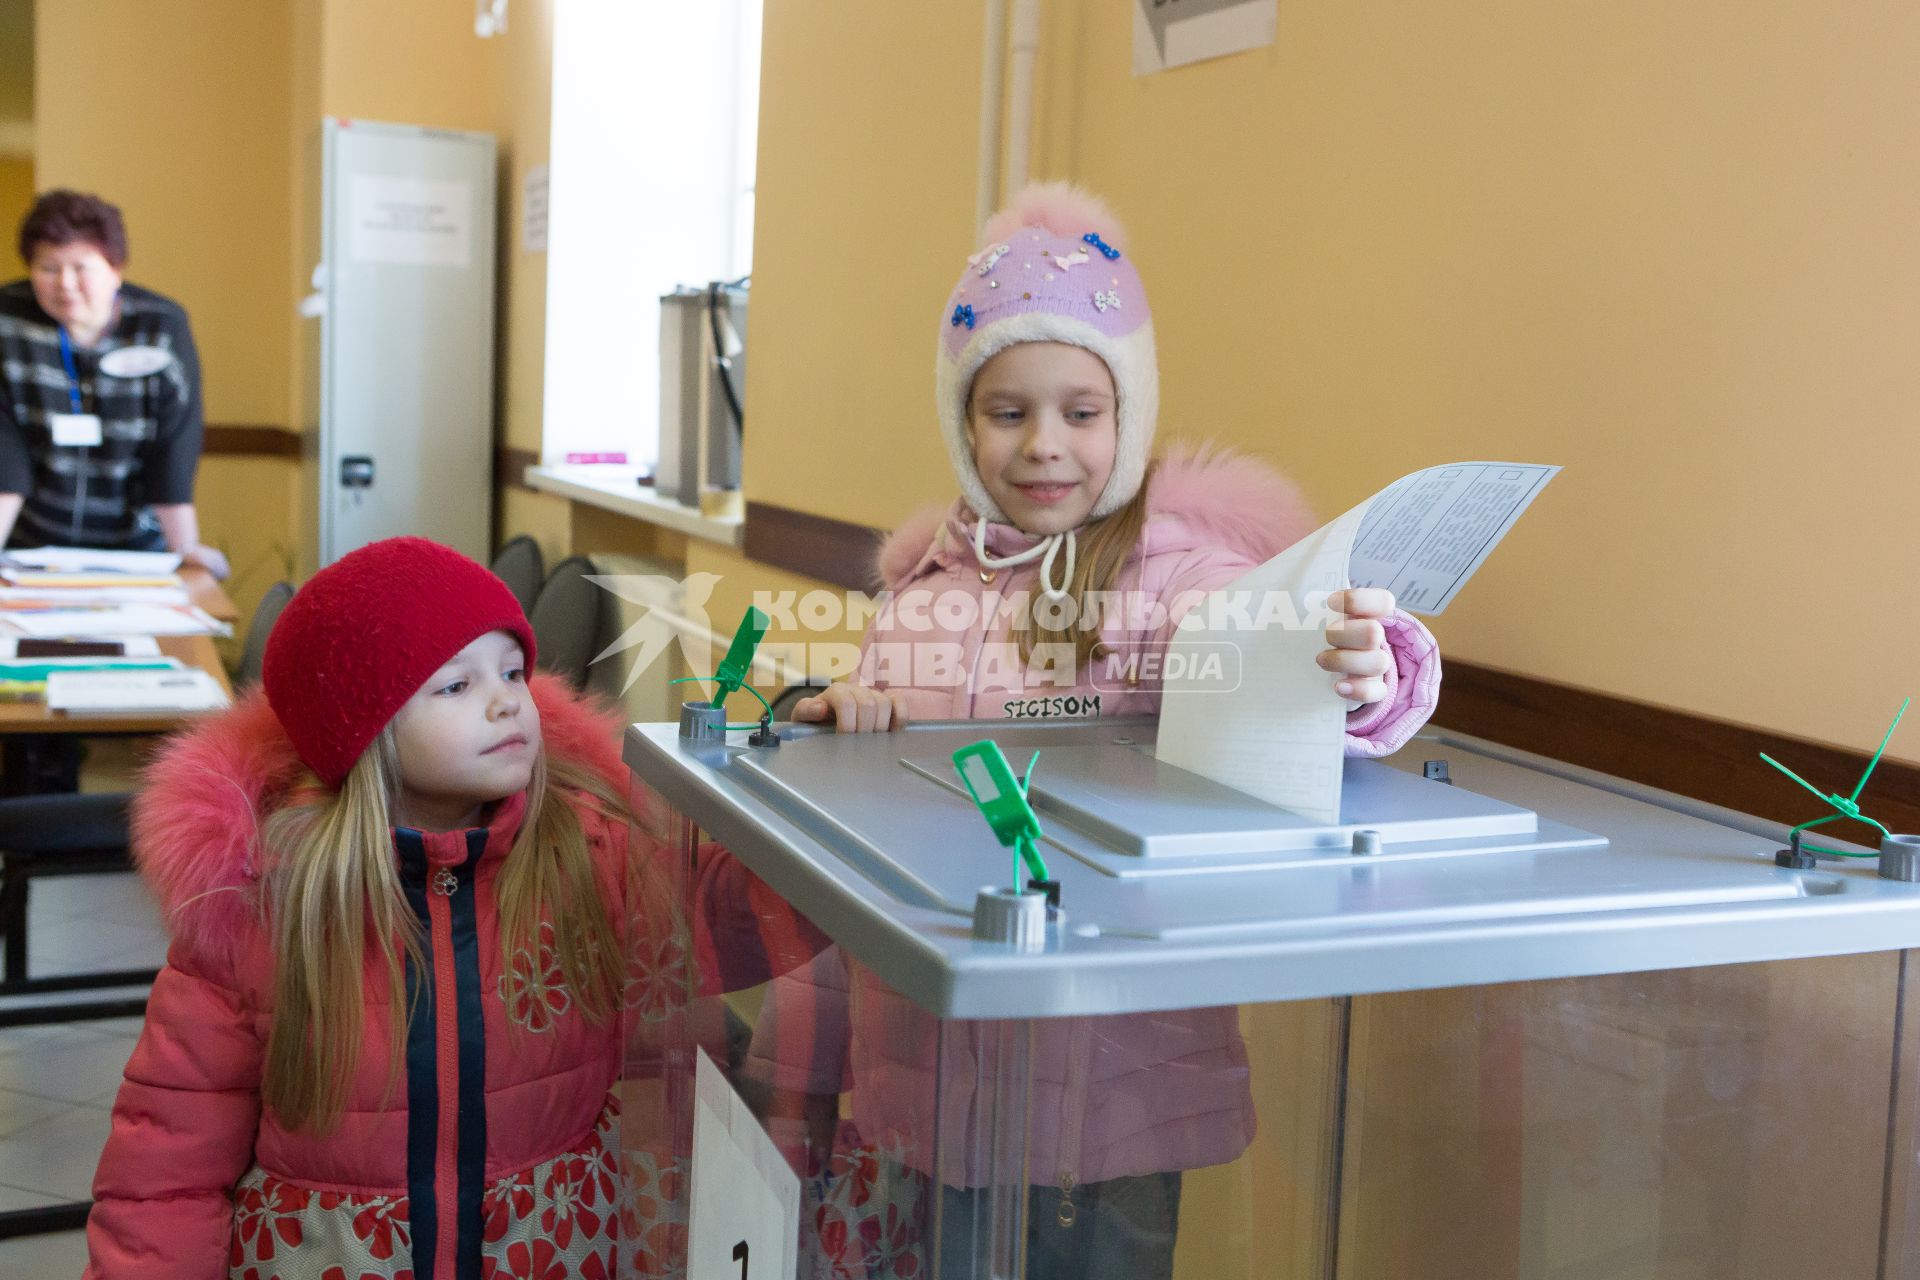 Санкт-Петербург.  Девочка опускает бюллетень  в урну  для голосования  во время выборов президента России.